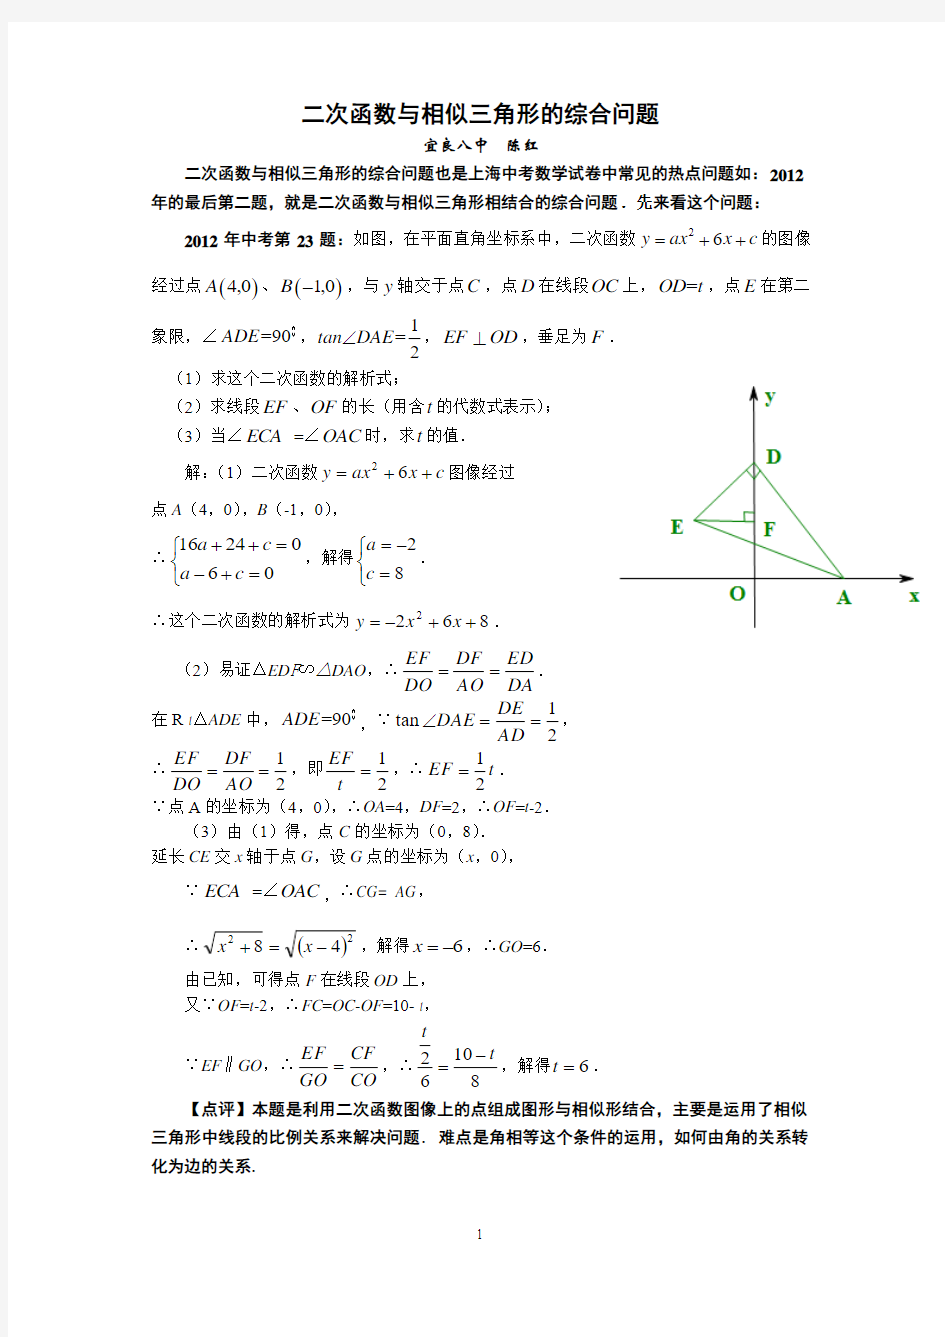 二次函数中的相似三角形问题